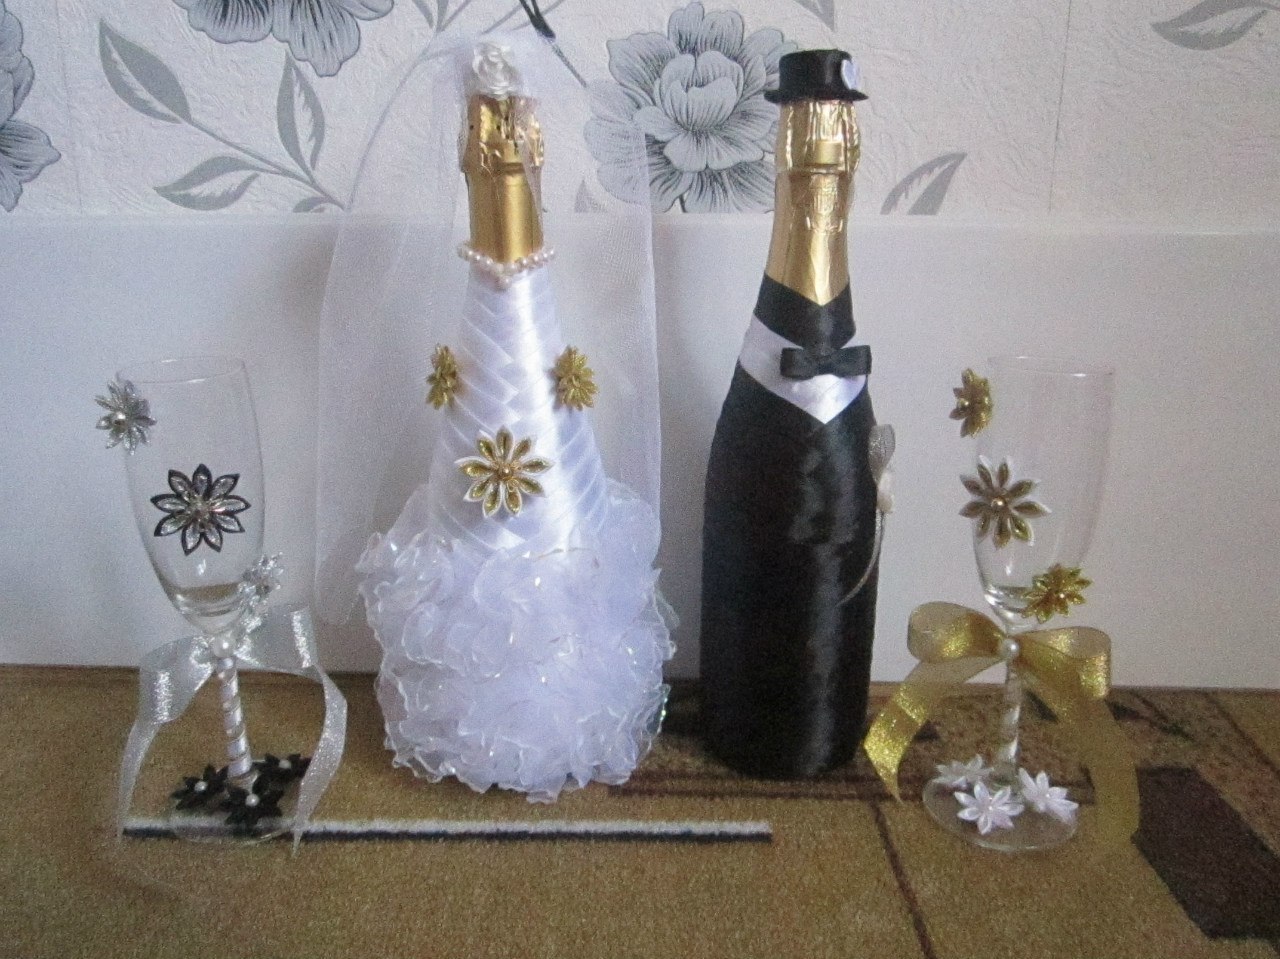 украшение на новый год на бутылку шампанского своими руками | Дзен